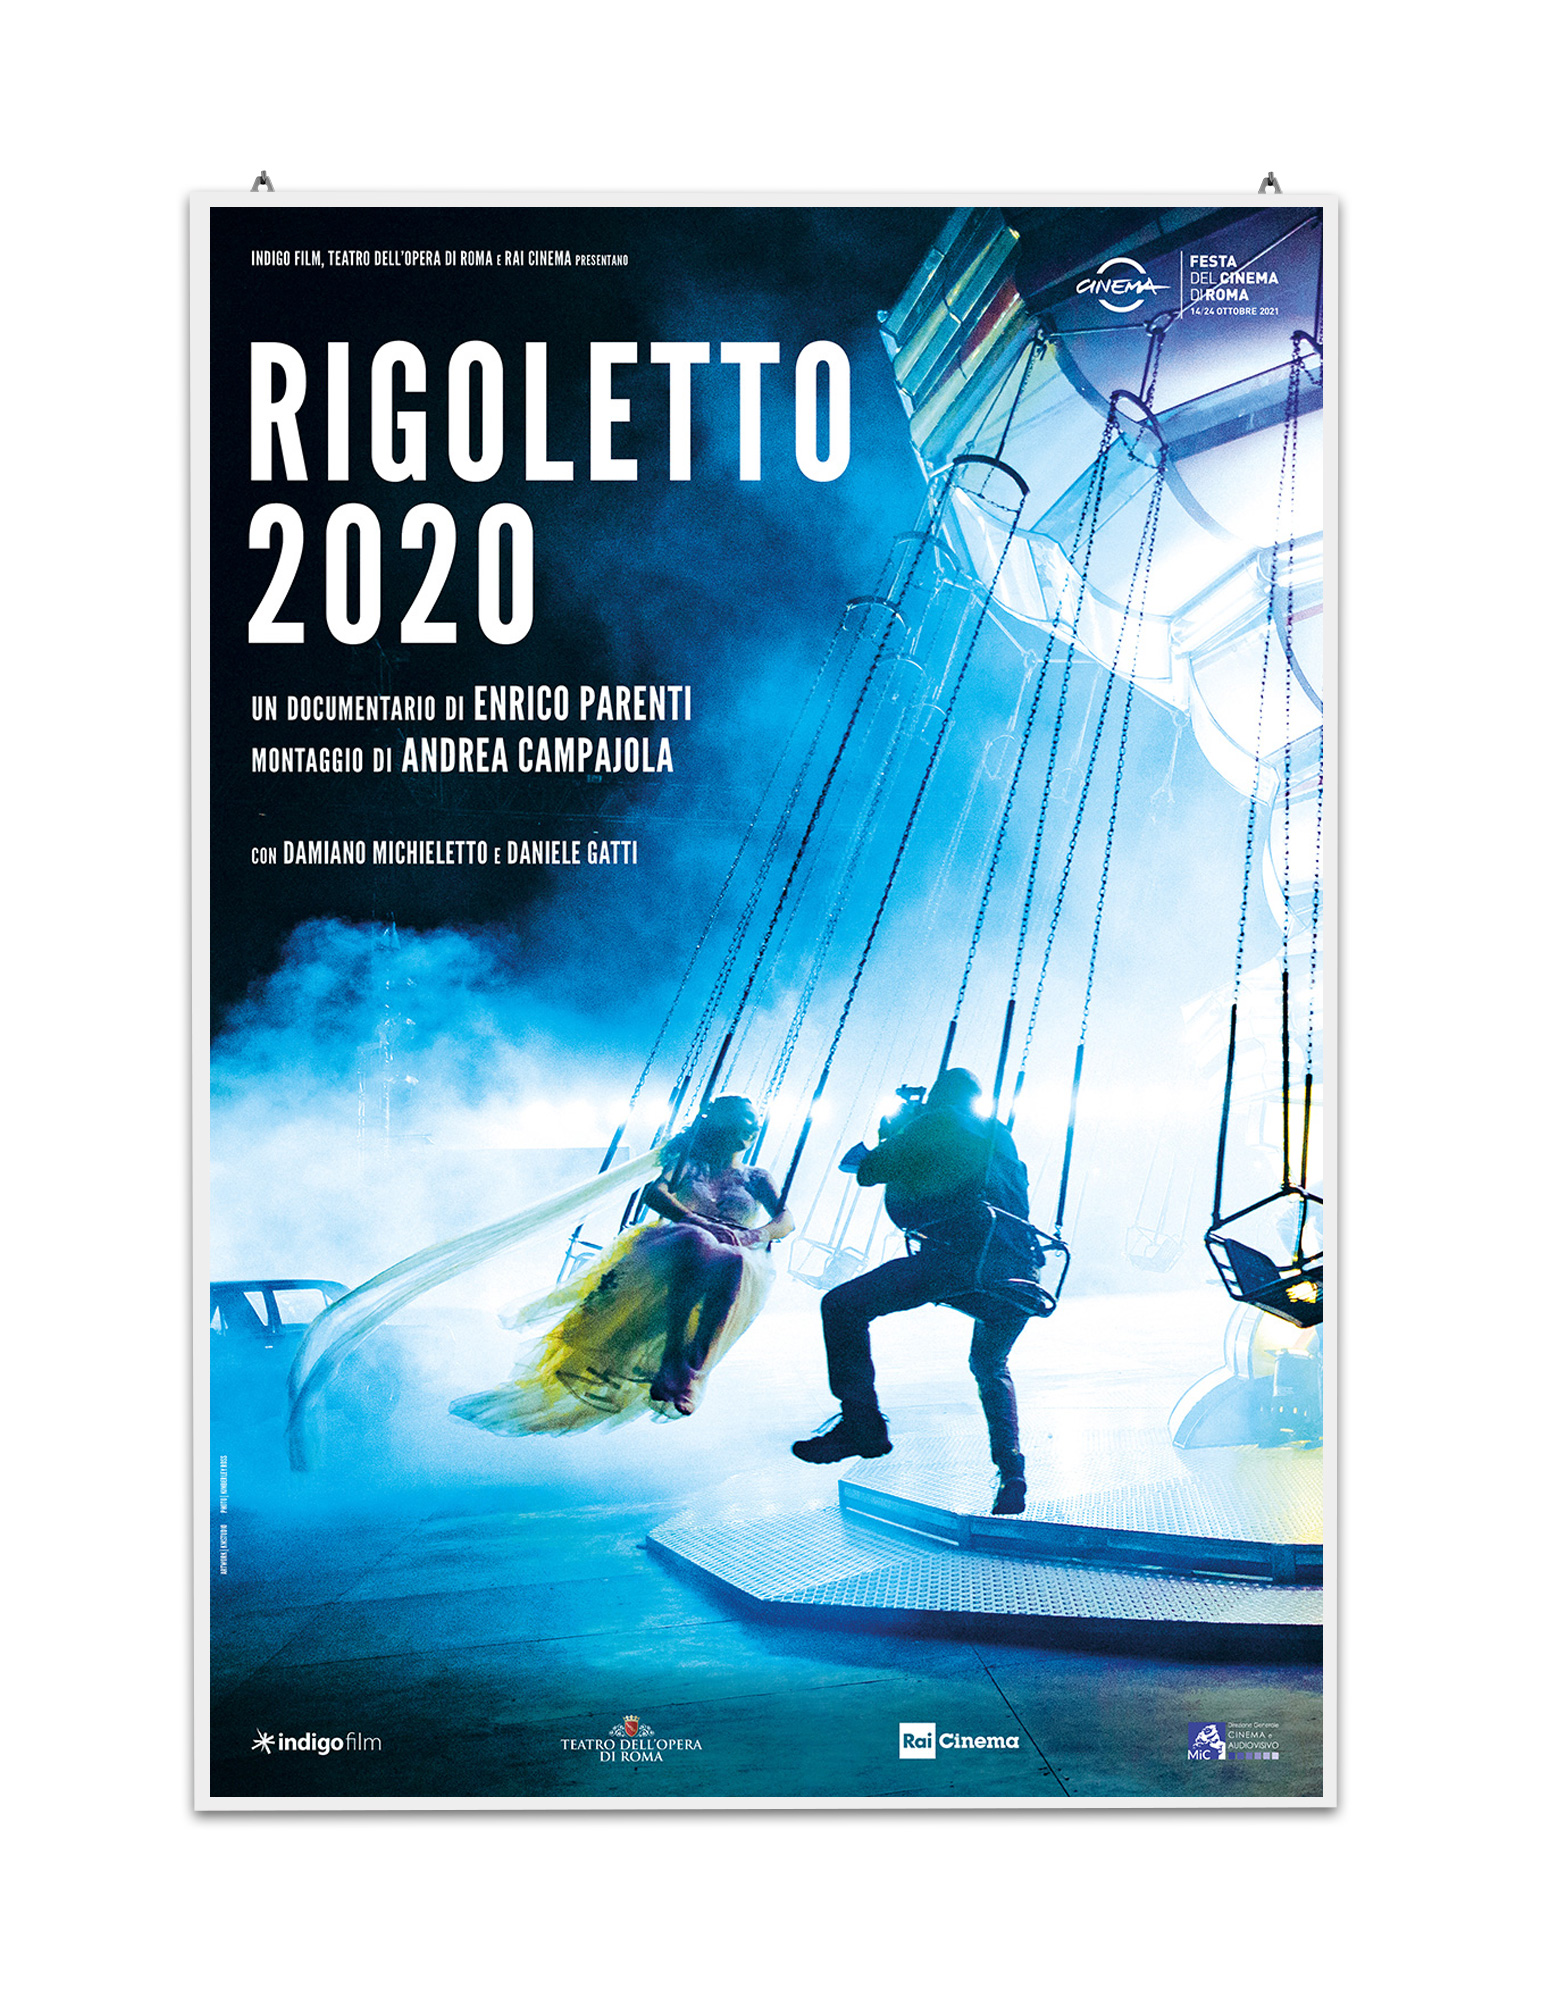 Rigoletto 2020 regia di Enrico Parenti